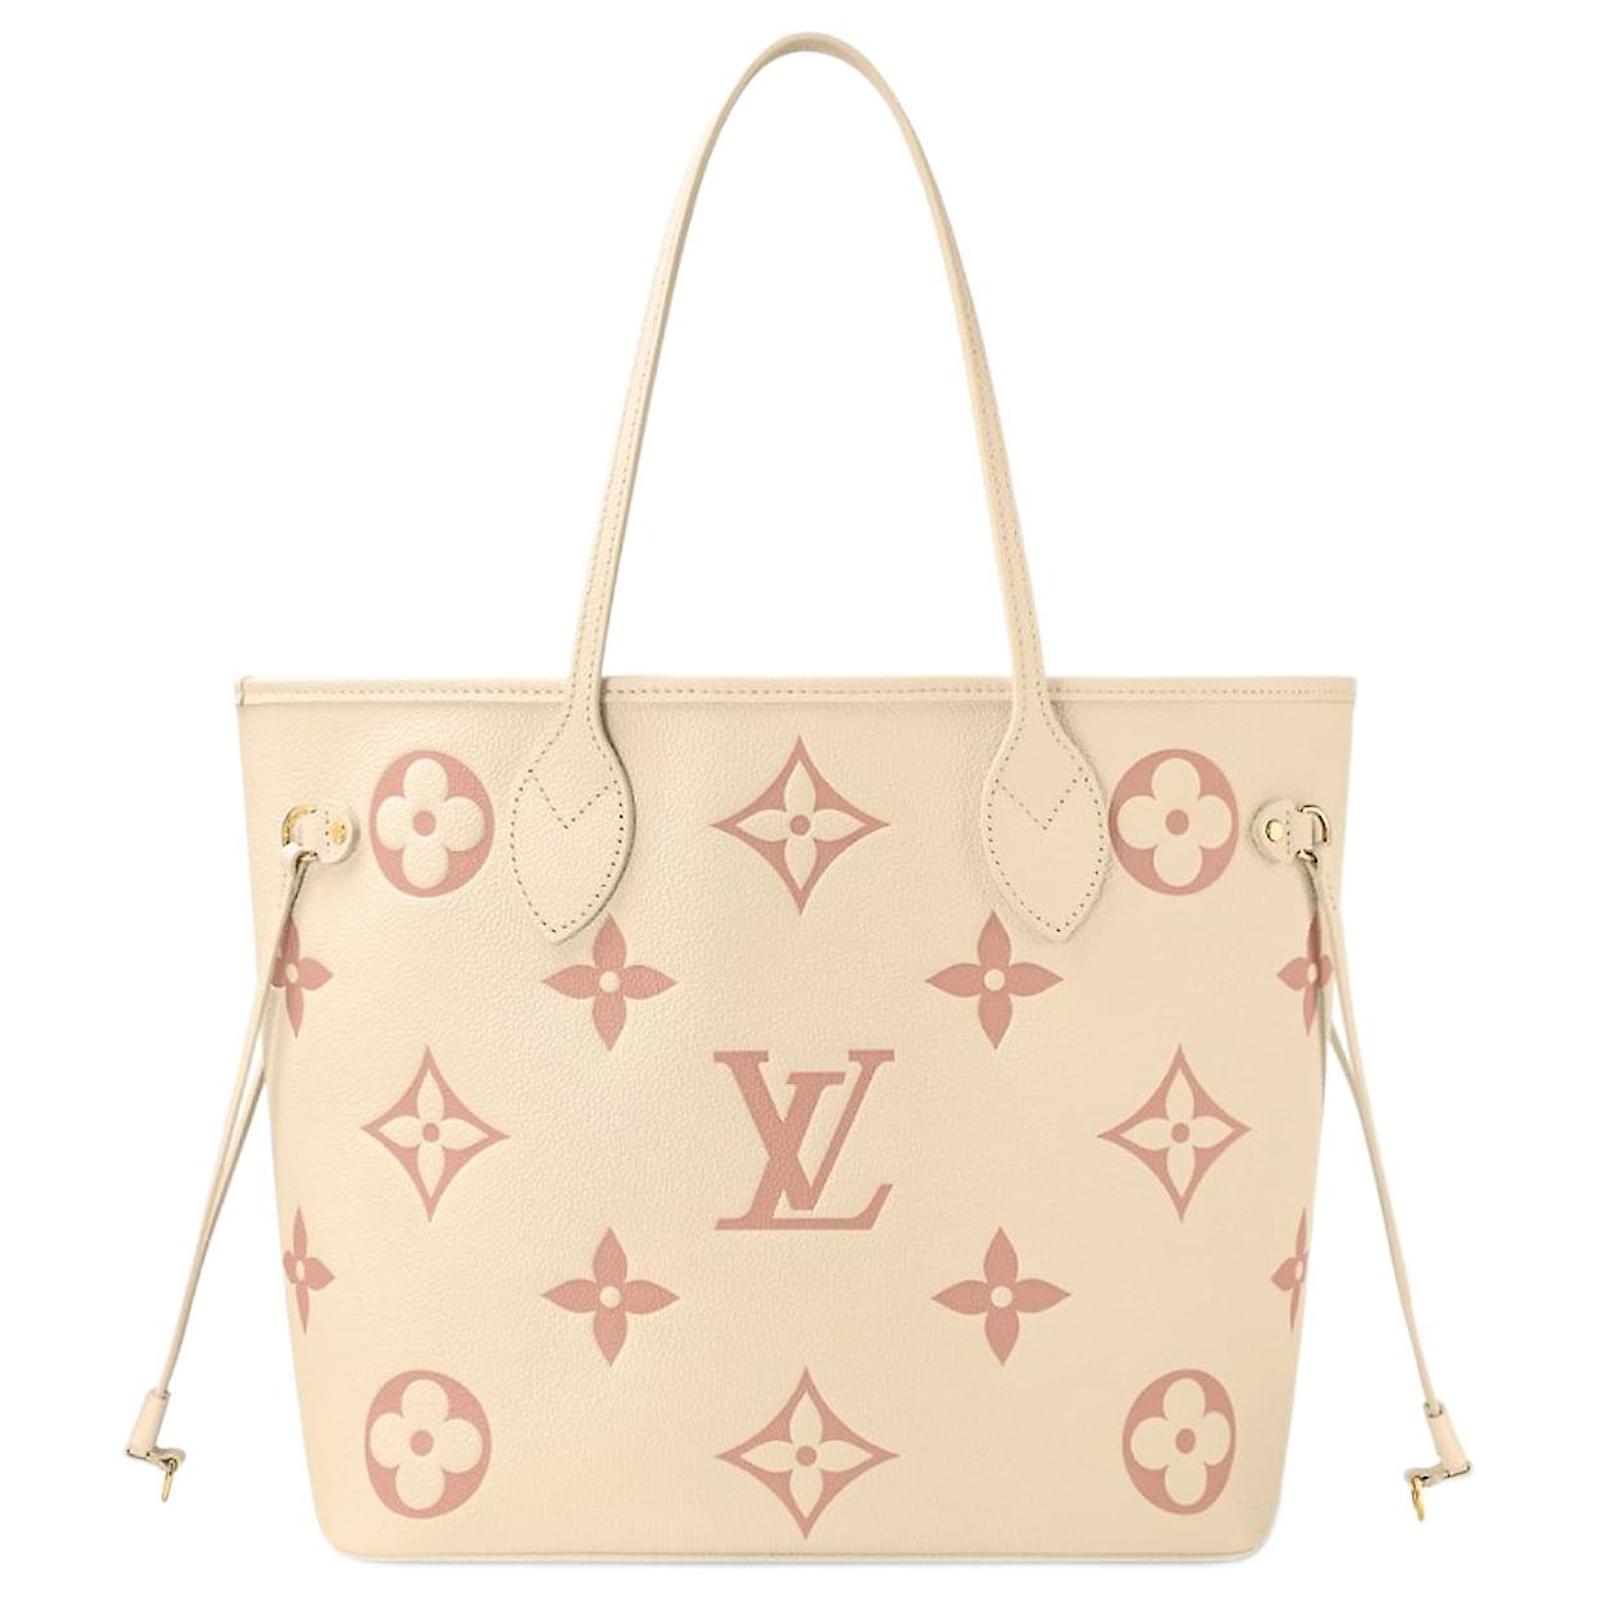 Handbags Louis Vuitton LV Trianon PM Emrpeinte